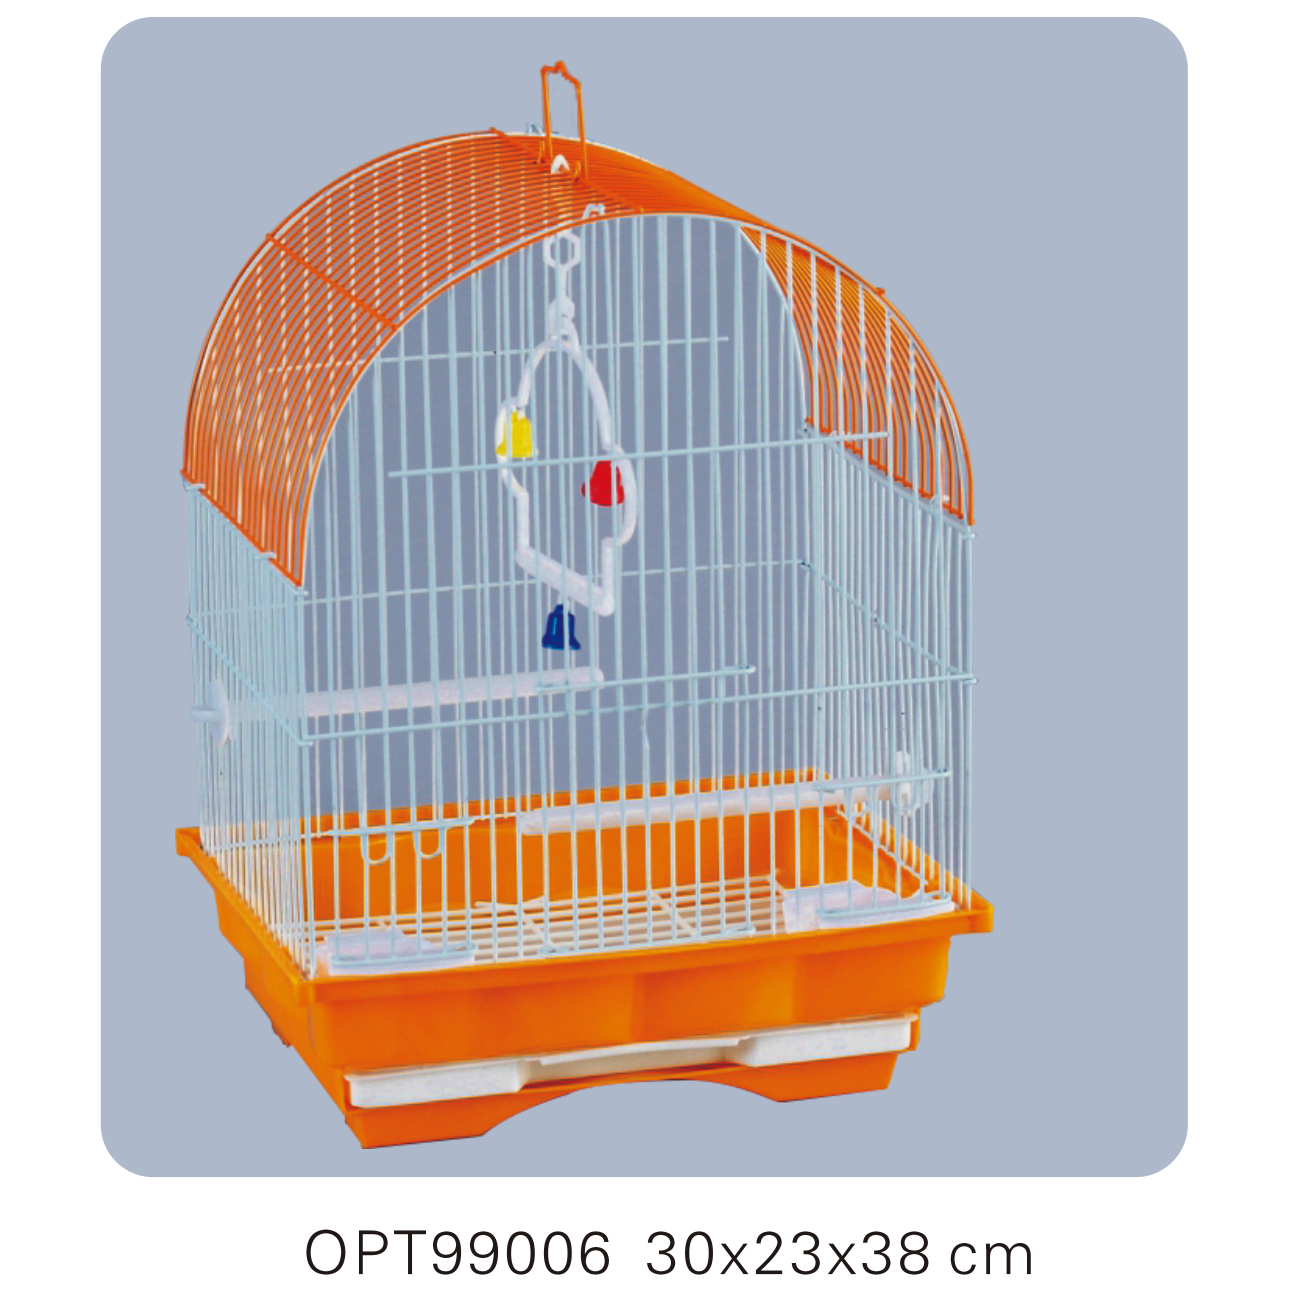 OPT99006 30x23x38cm Bird cages